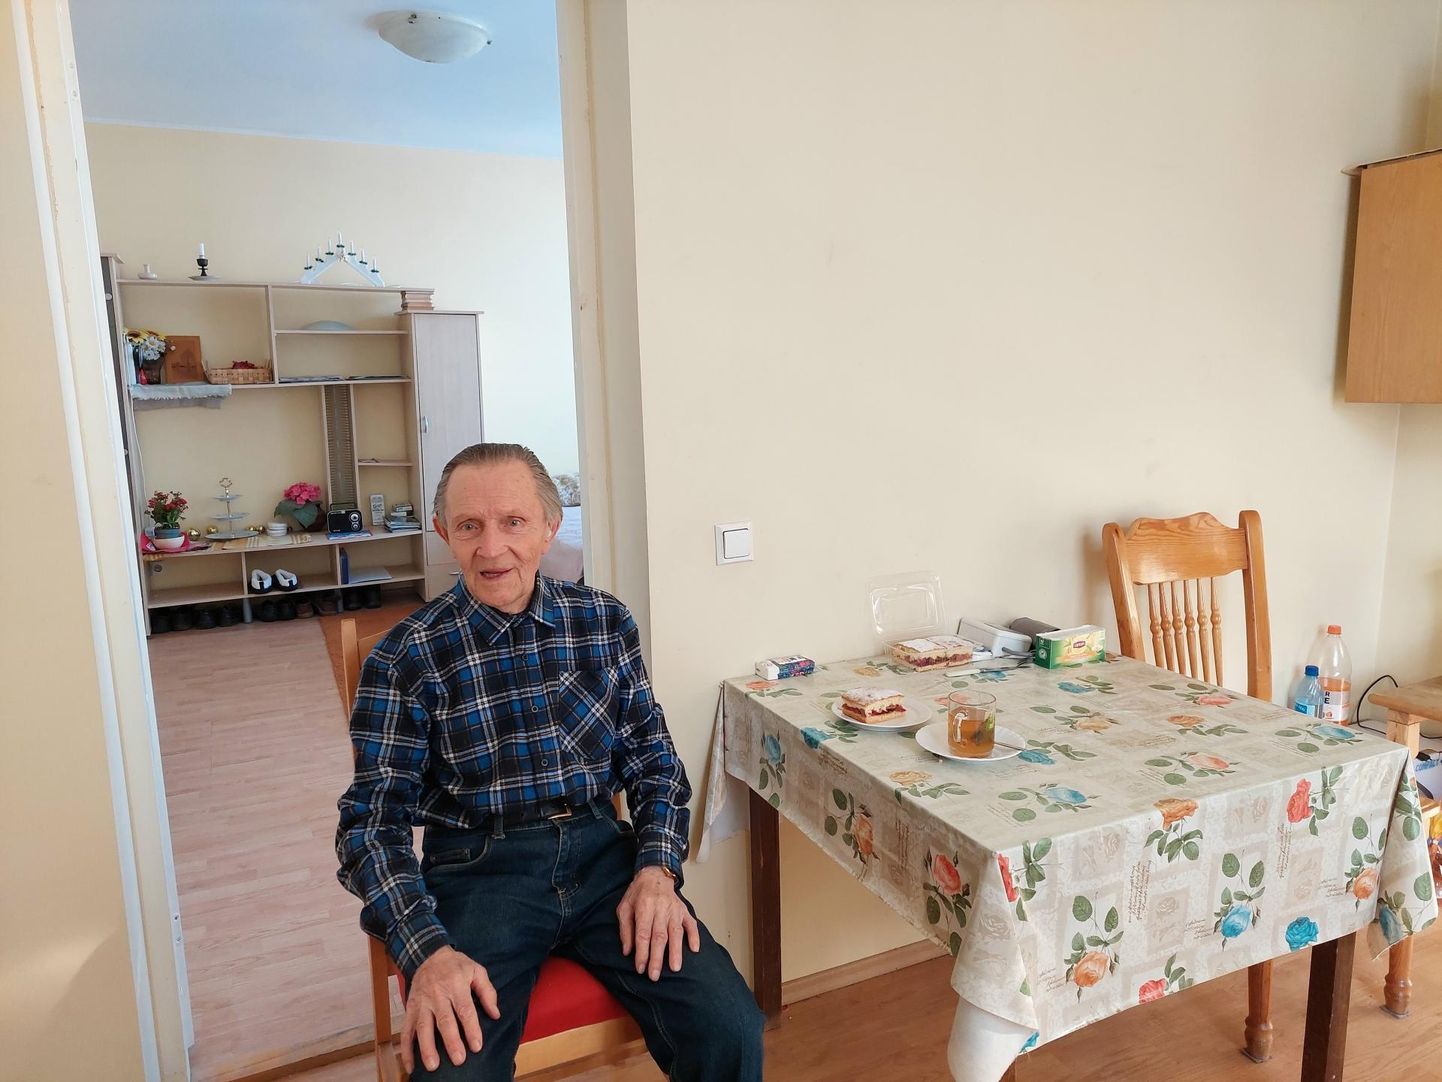 Kalev Võttin on Elvas Pikk 26 maja korteris number 11 elanud pea neli aastat. Eelmise aastaga lõppes tema üürileping ning Elva vallavalitsus seda enam ei pikendanud.